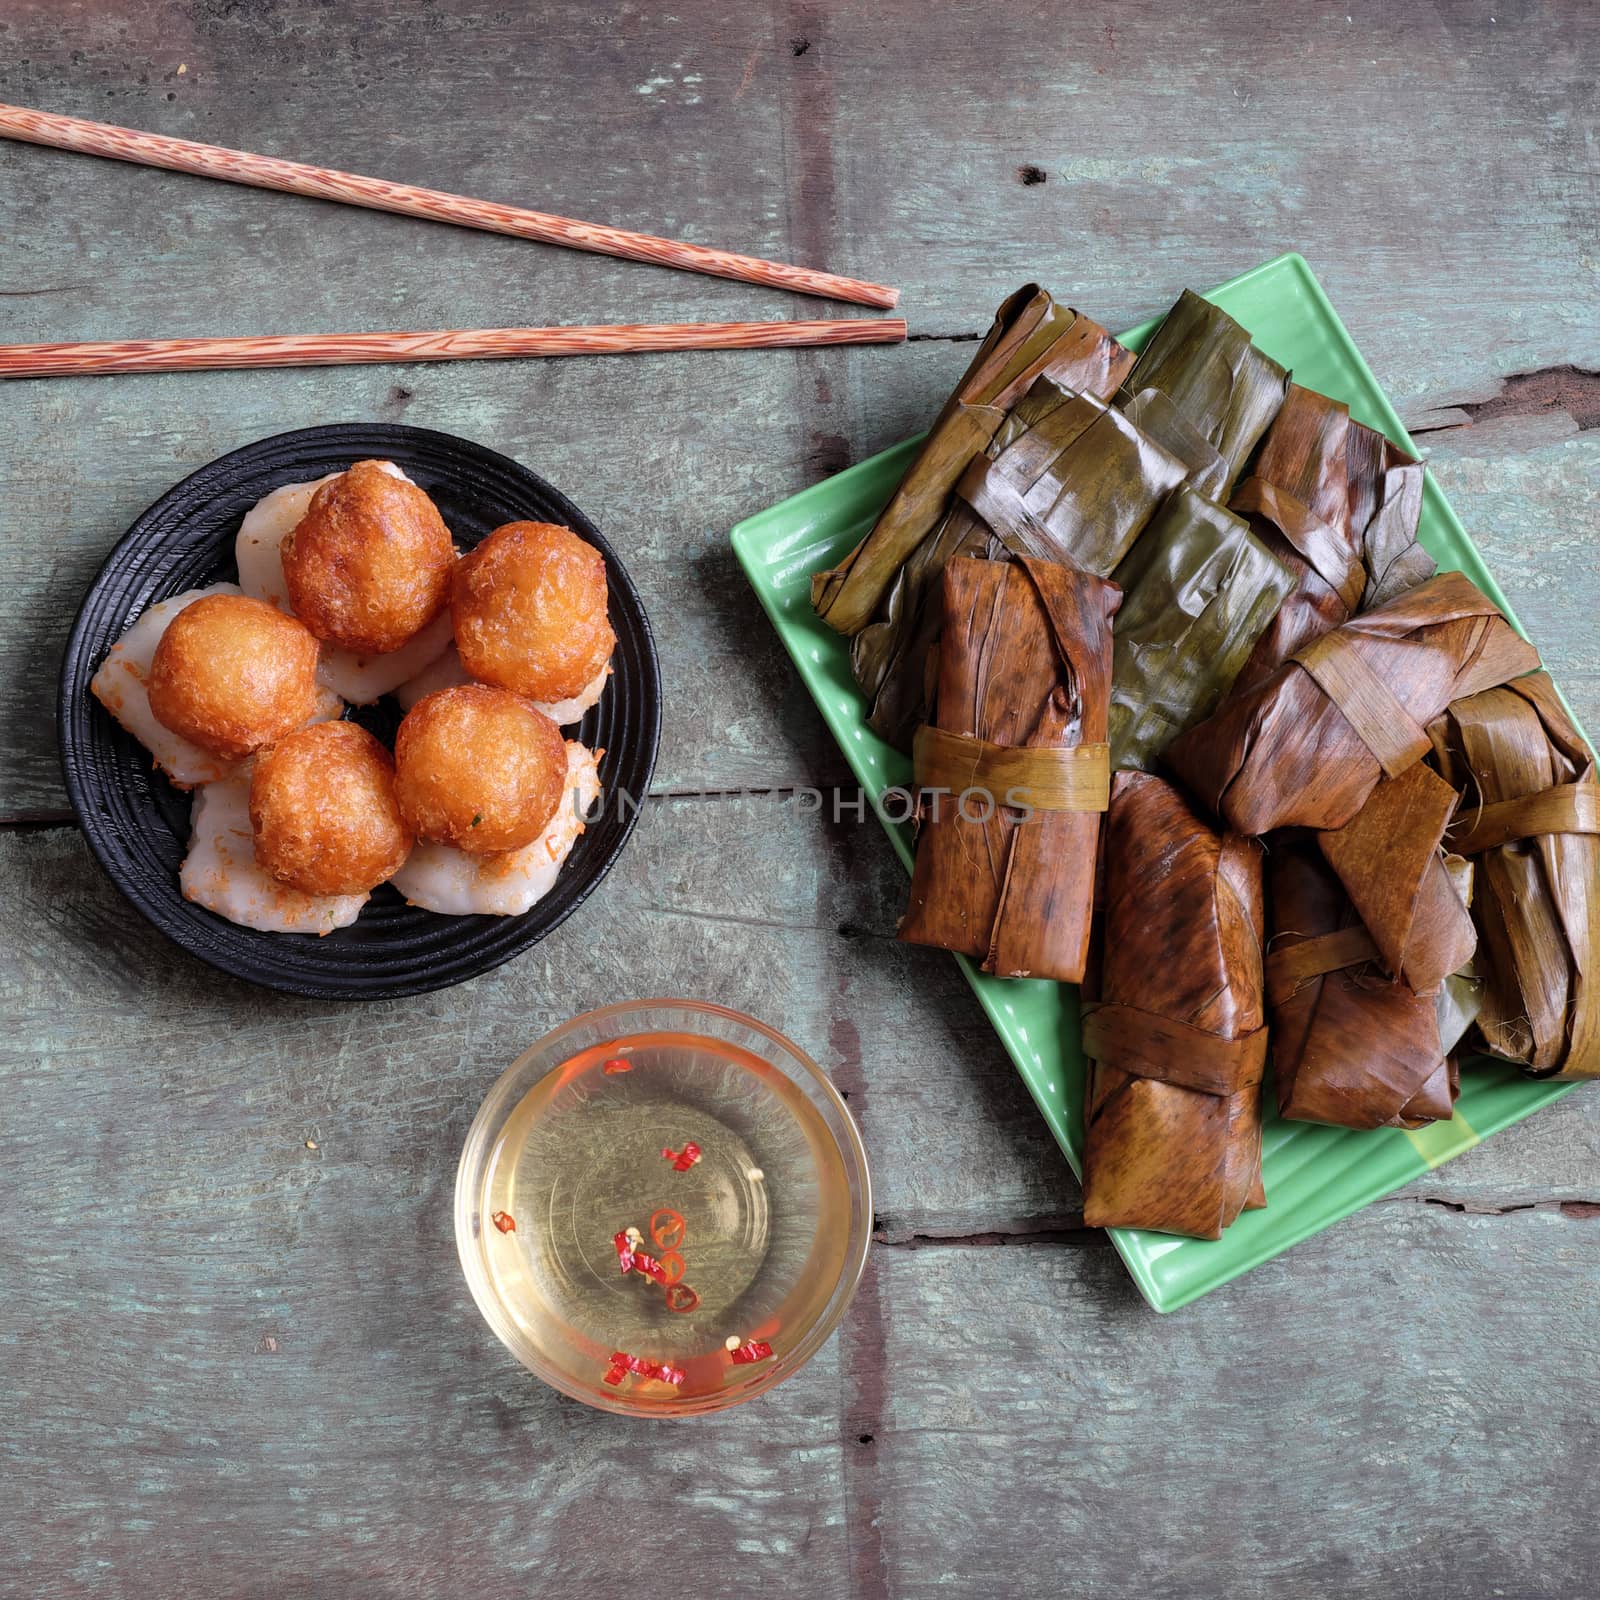 Vietnamese food, banh nam, banh bot loc by xuanhuongho